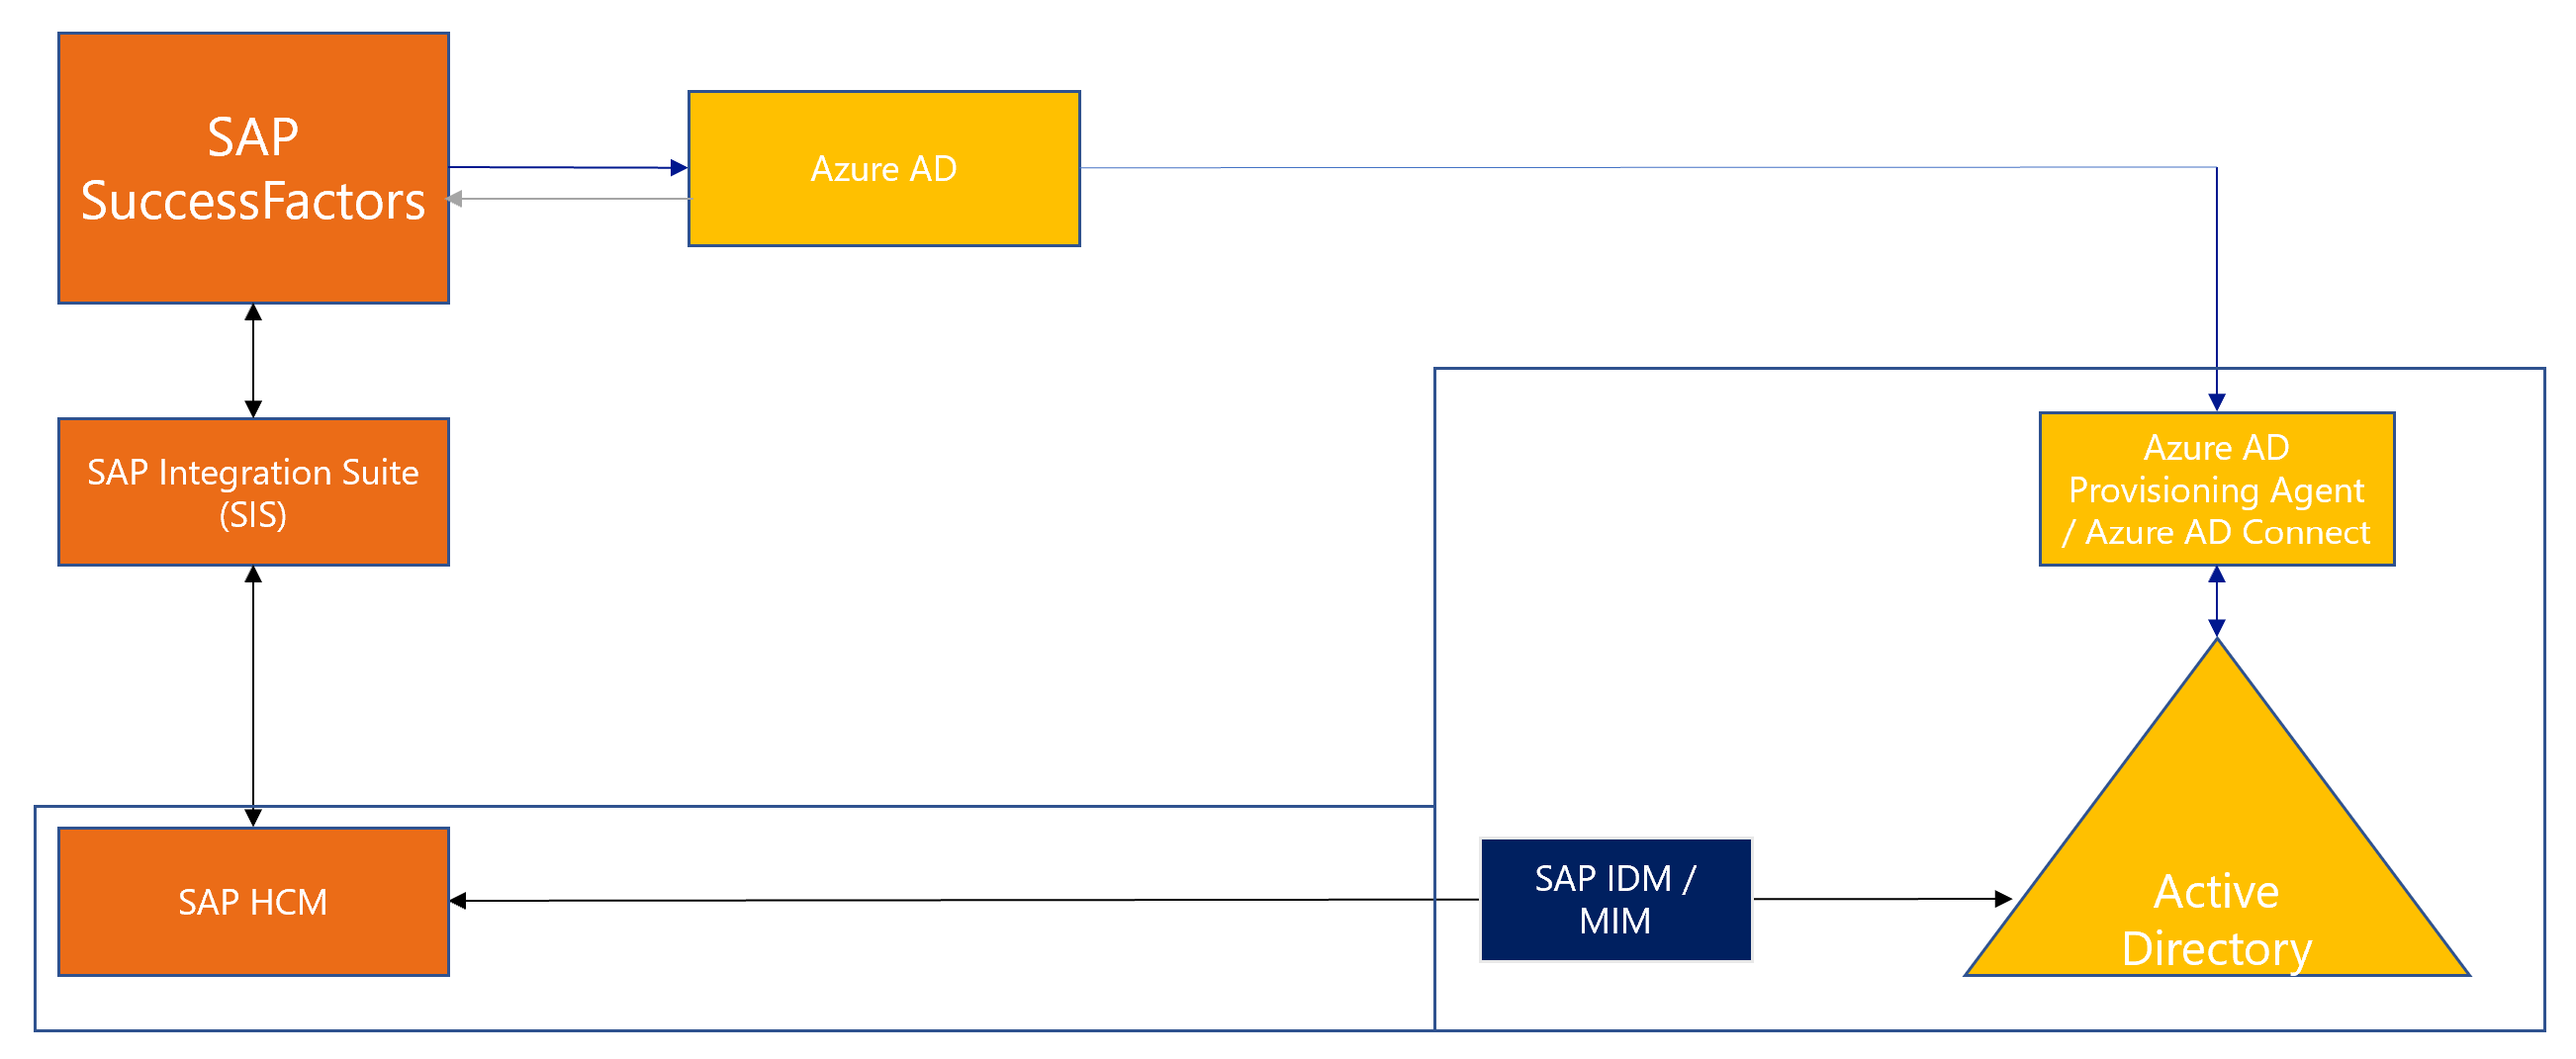 SAP HR 통합 다이어그램.